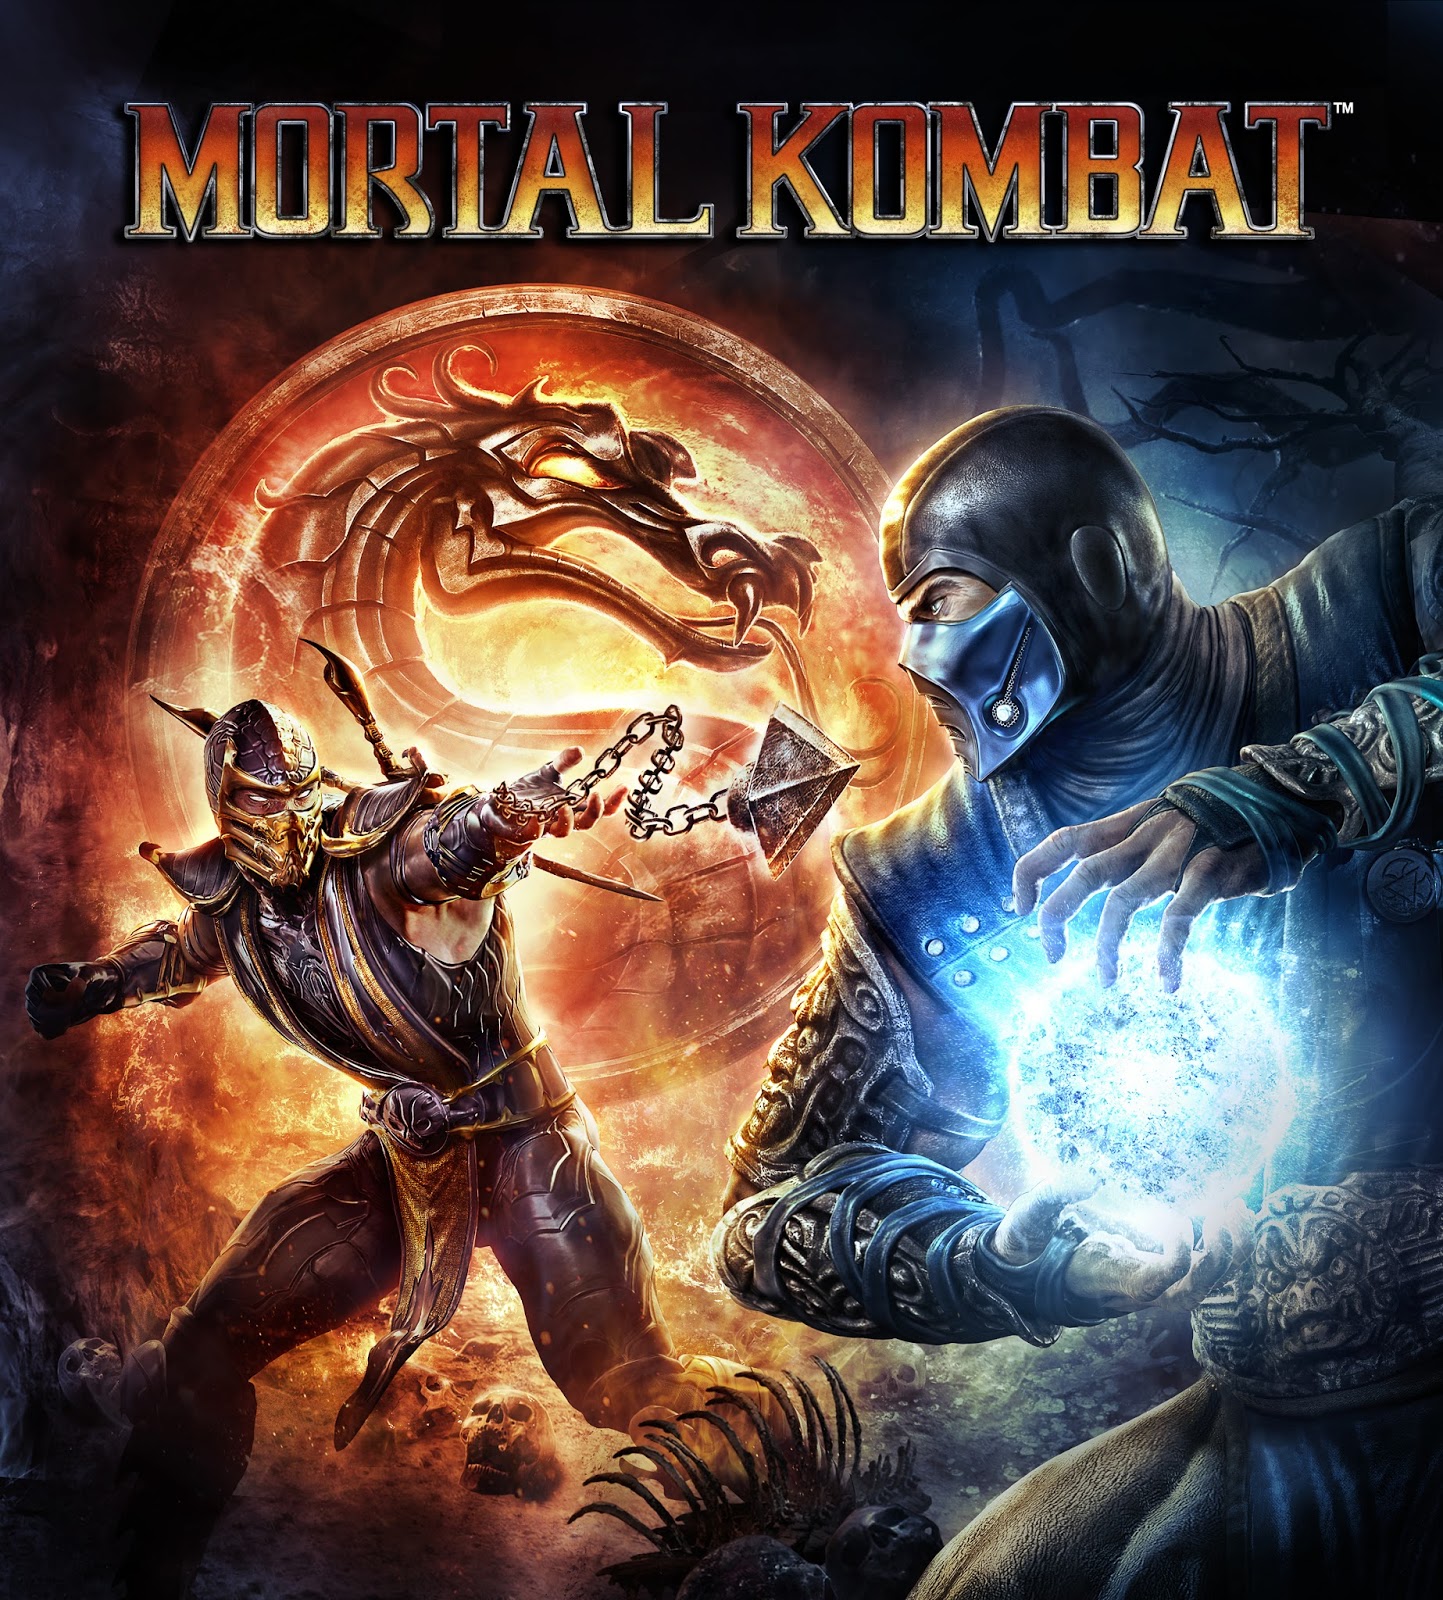 Mortal Kombat: Komplete Edition, Gaming Database Wiki